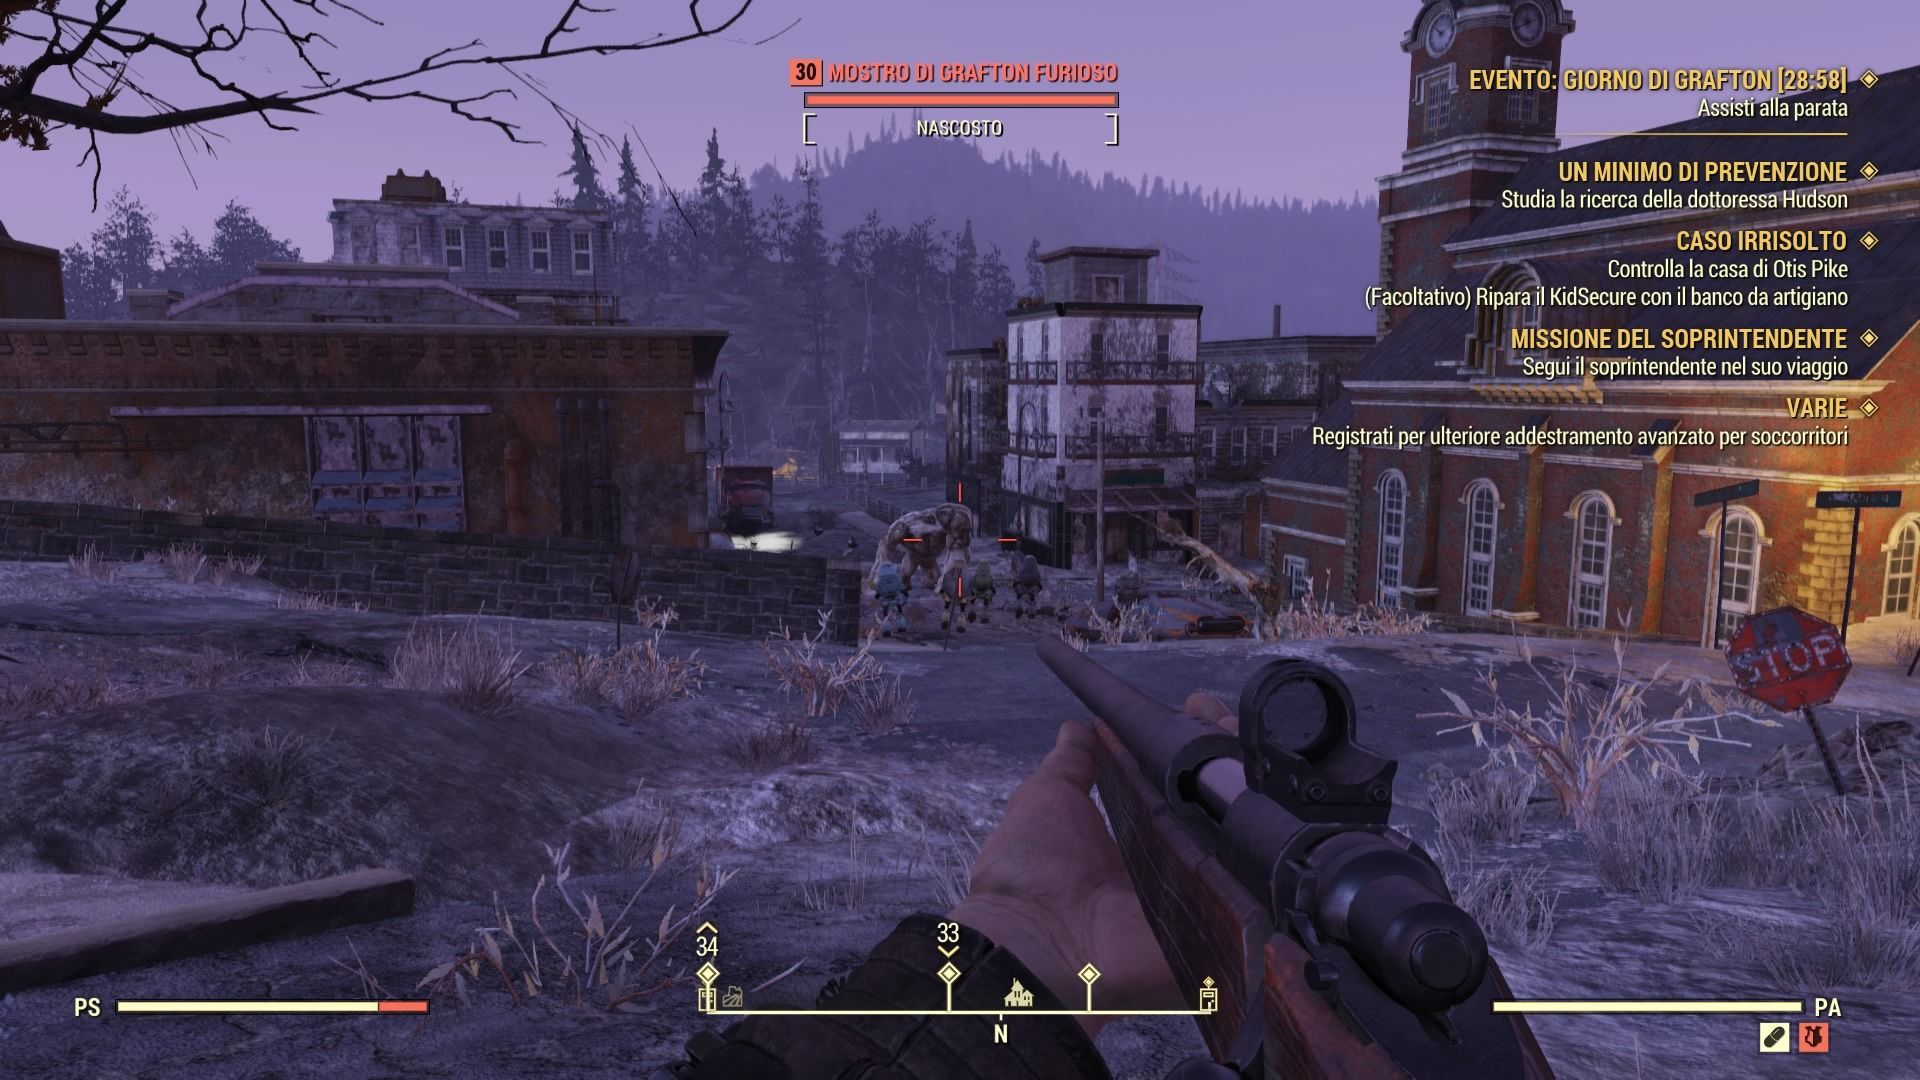 Fallout 76, come completare l'evento "Giorno di Grafton"